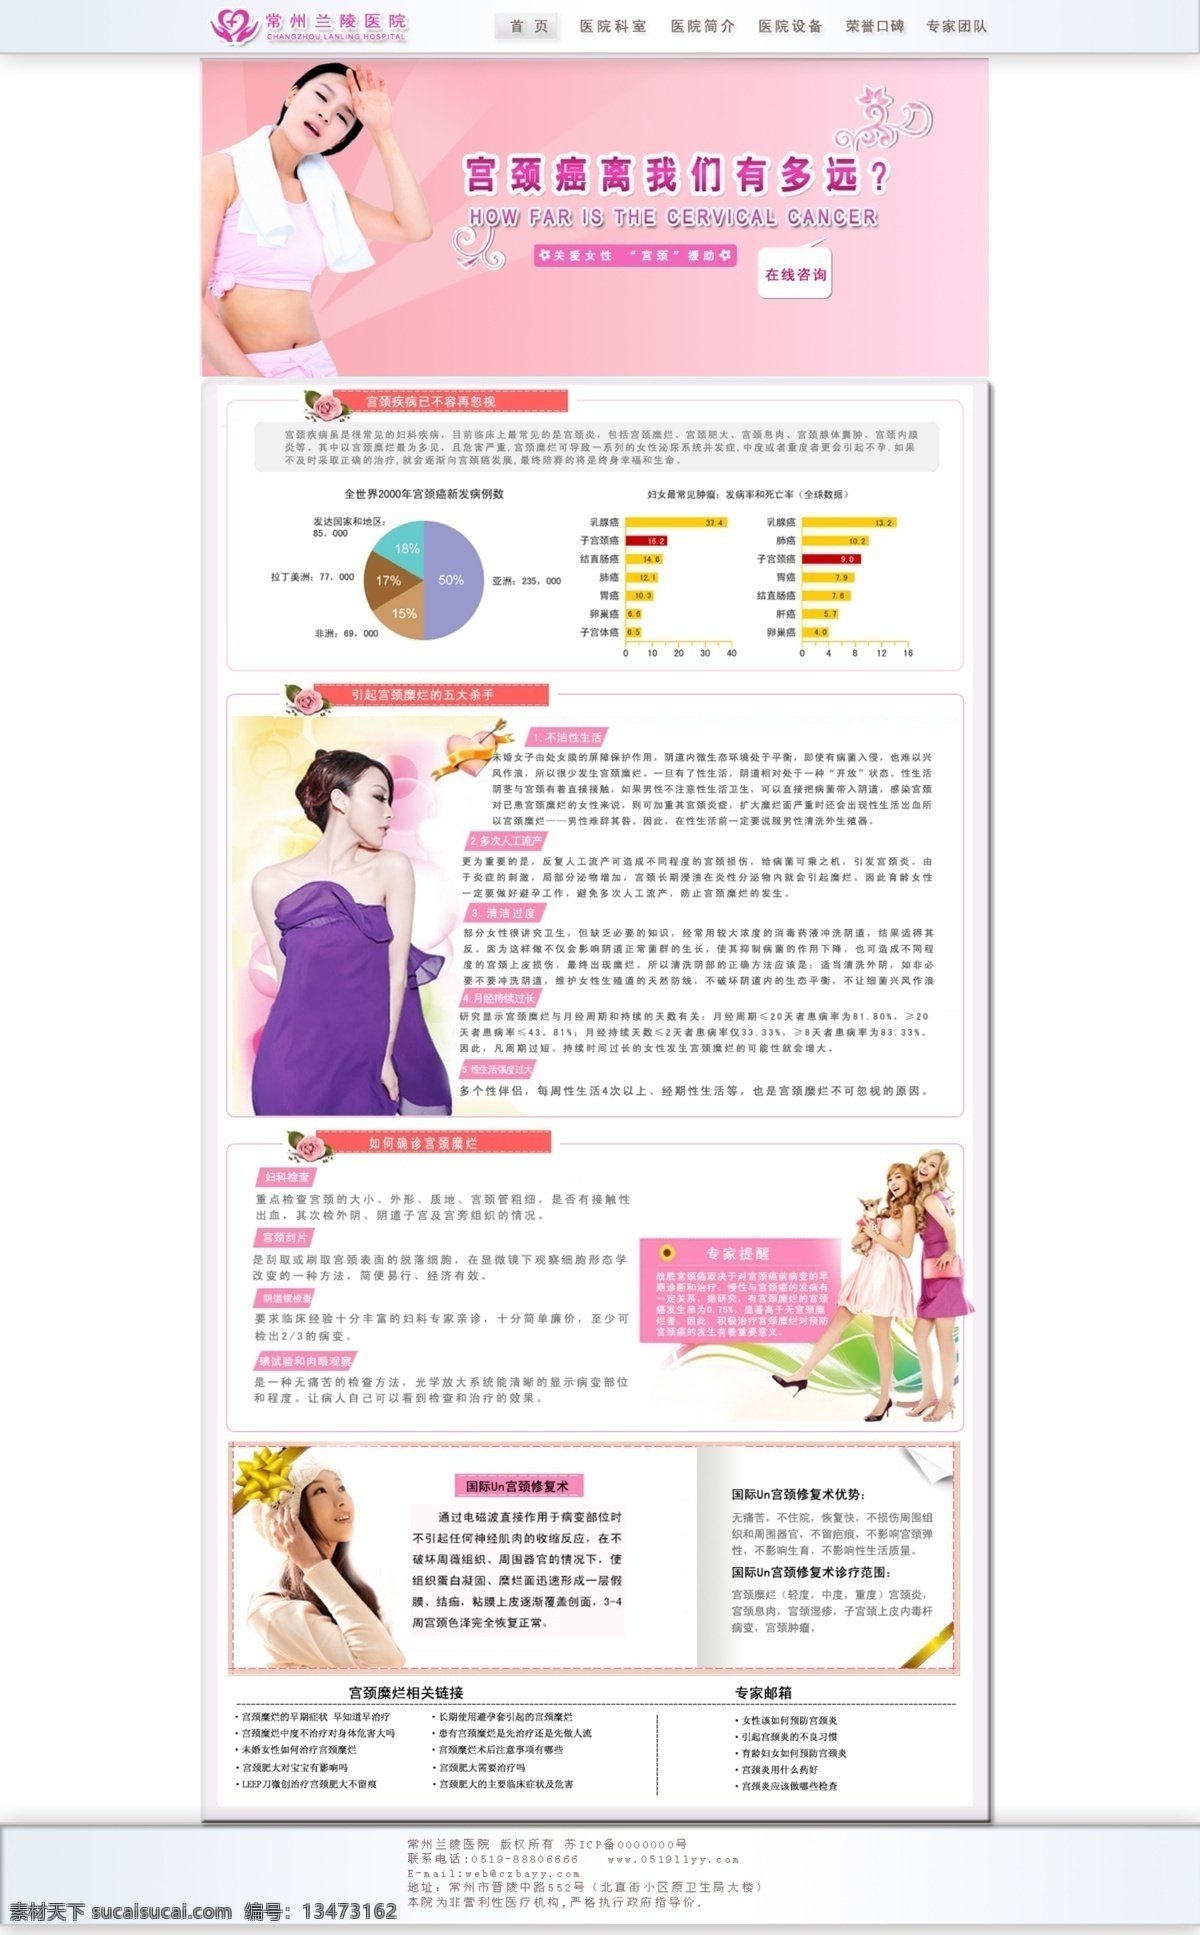 宫颈疾病专题 宫颈疾病 宫颈癌 妇科 专题 女人 美女 中文模版 网页模板 源文件